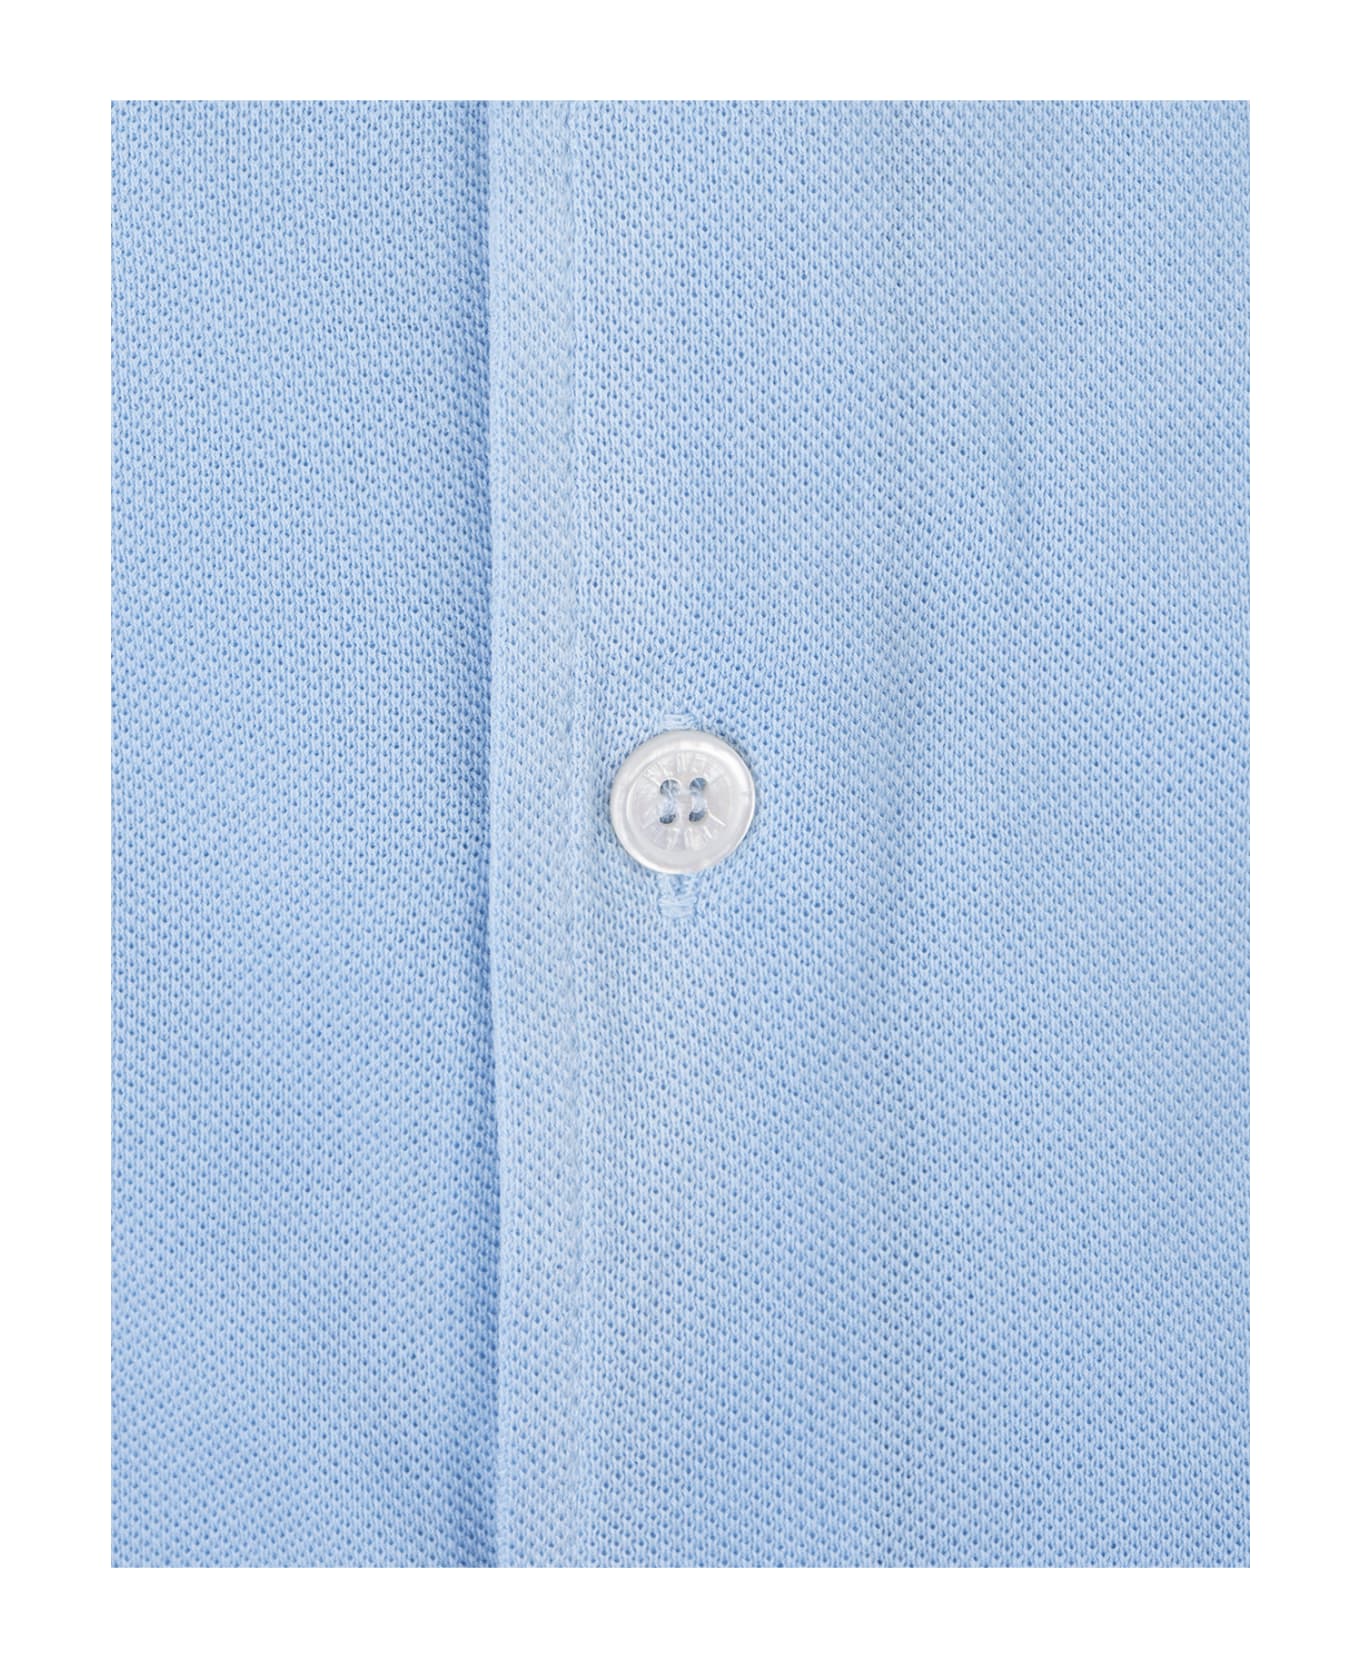 Fedeli Shirt In Light Blue Cotton Piqué - Blue